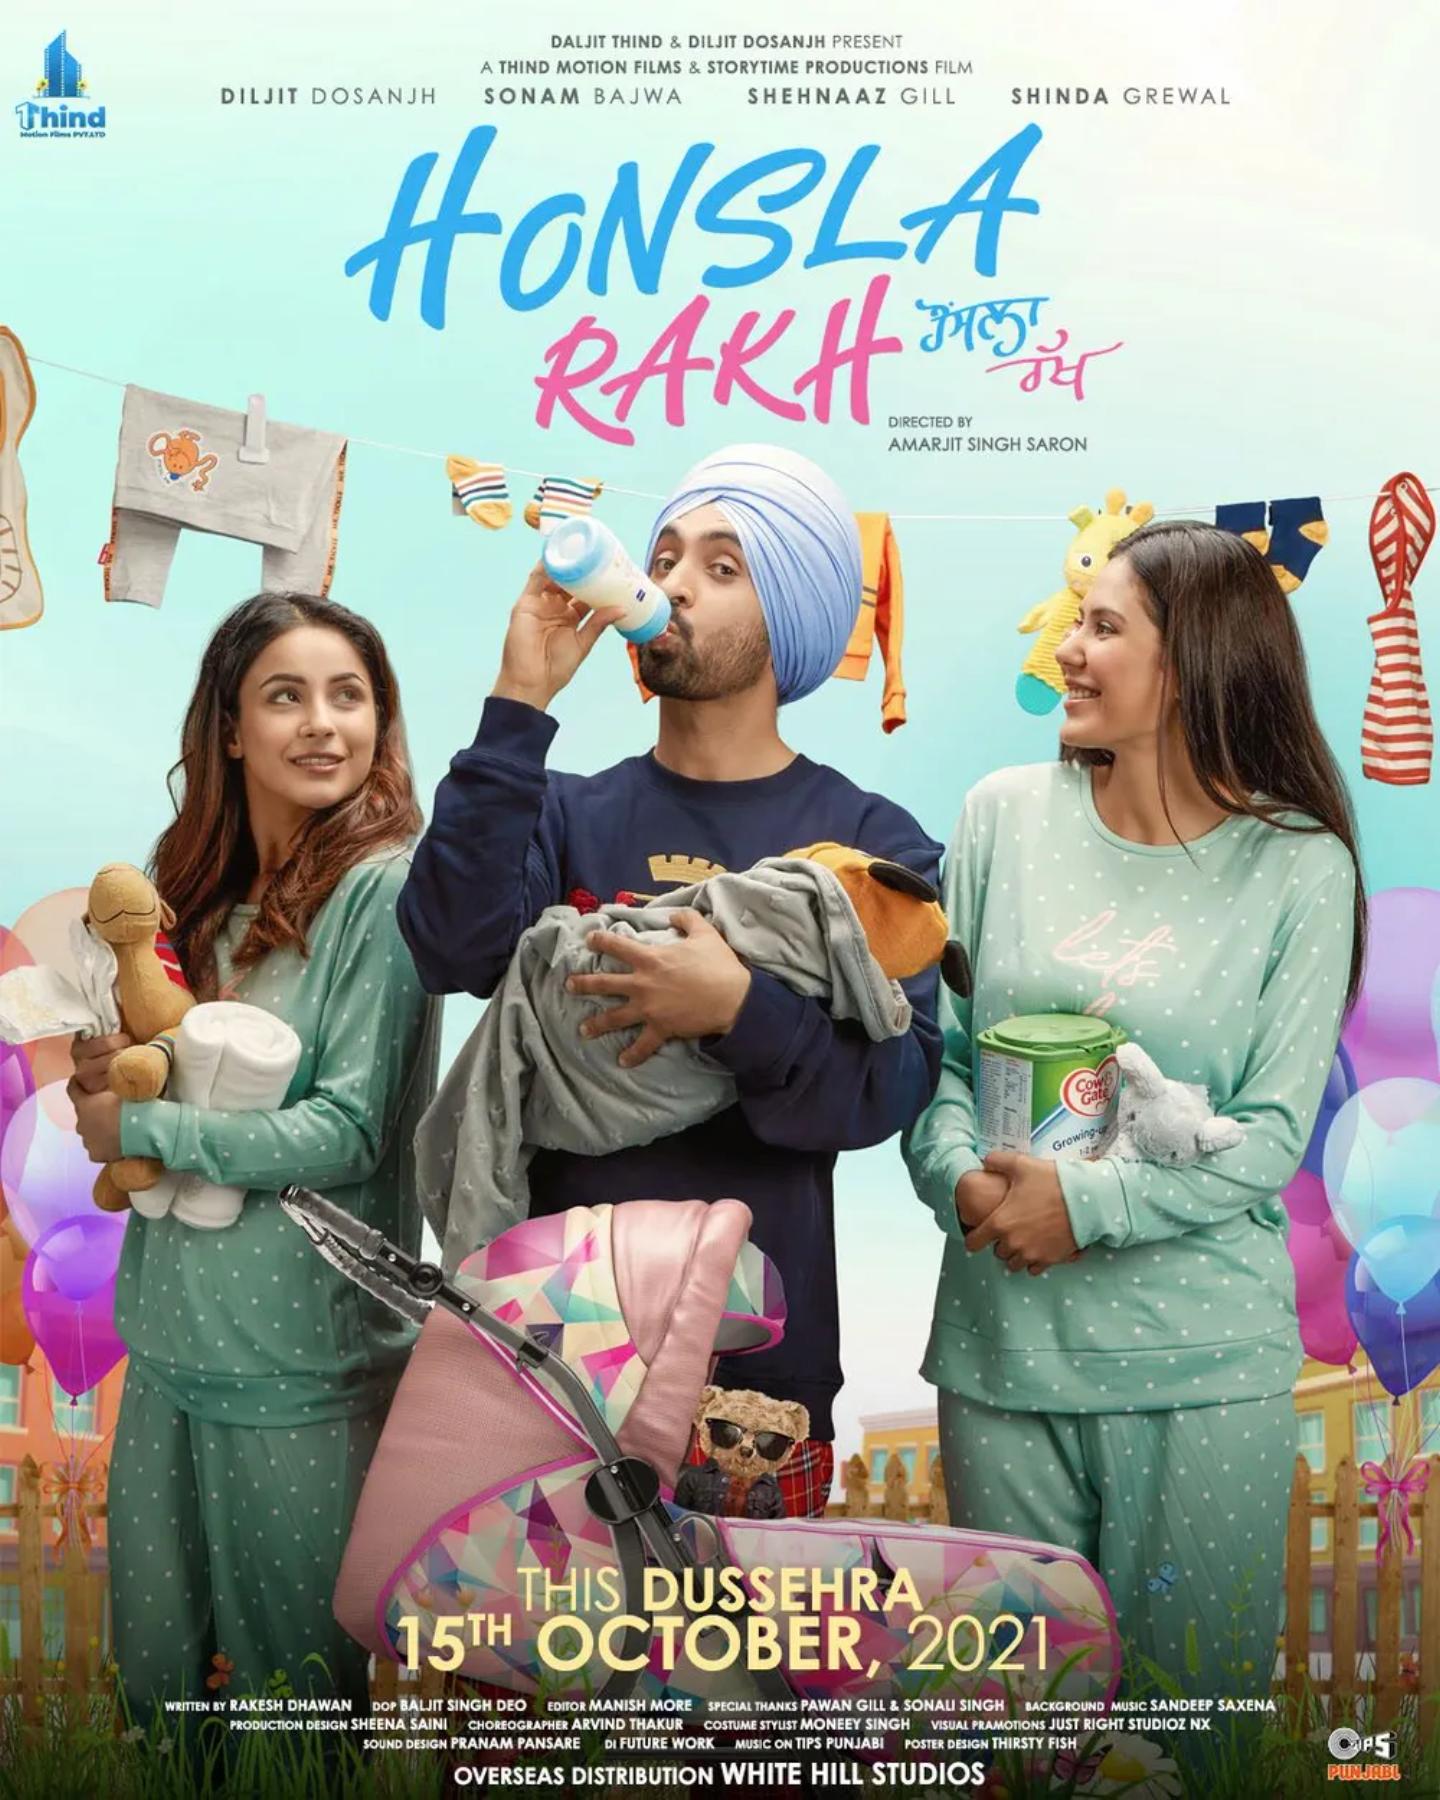 Plakat for 'Honsla Rakh - Stay Calm'